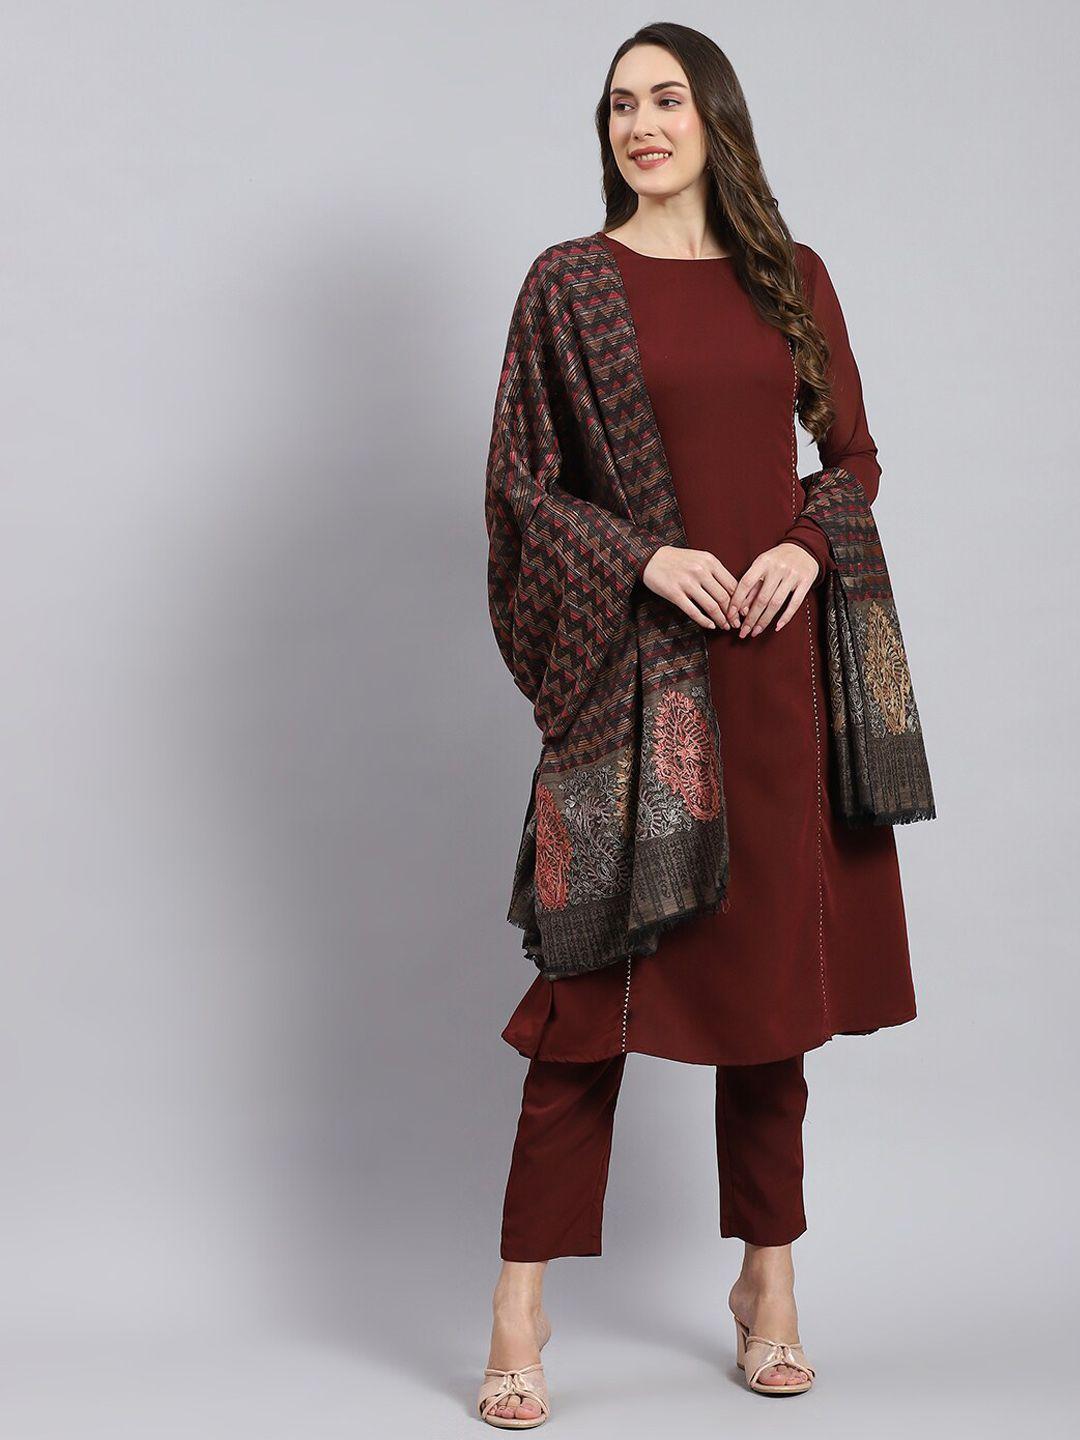 monte-carlo-ethnic-motifs-woven-design-shawl